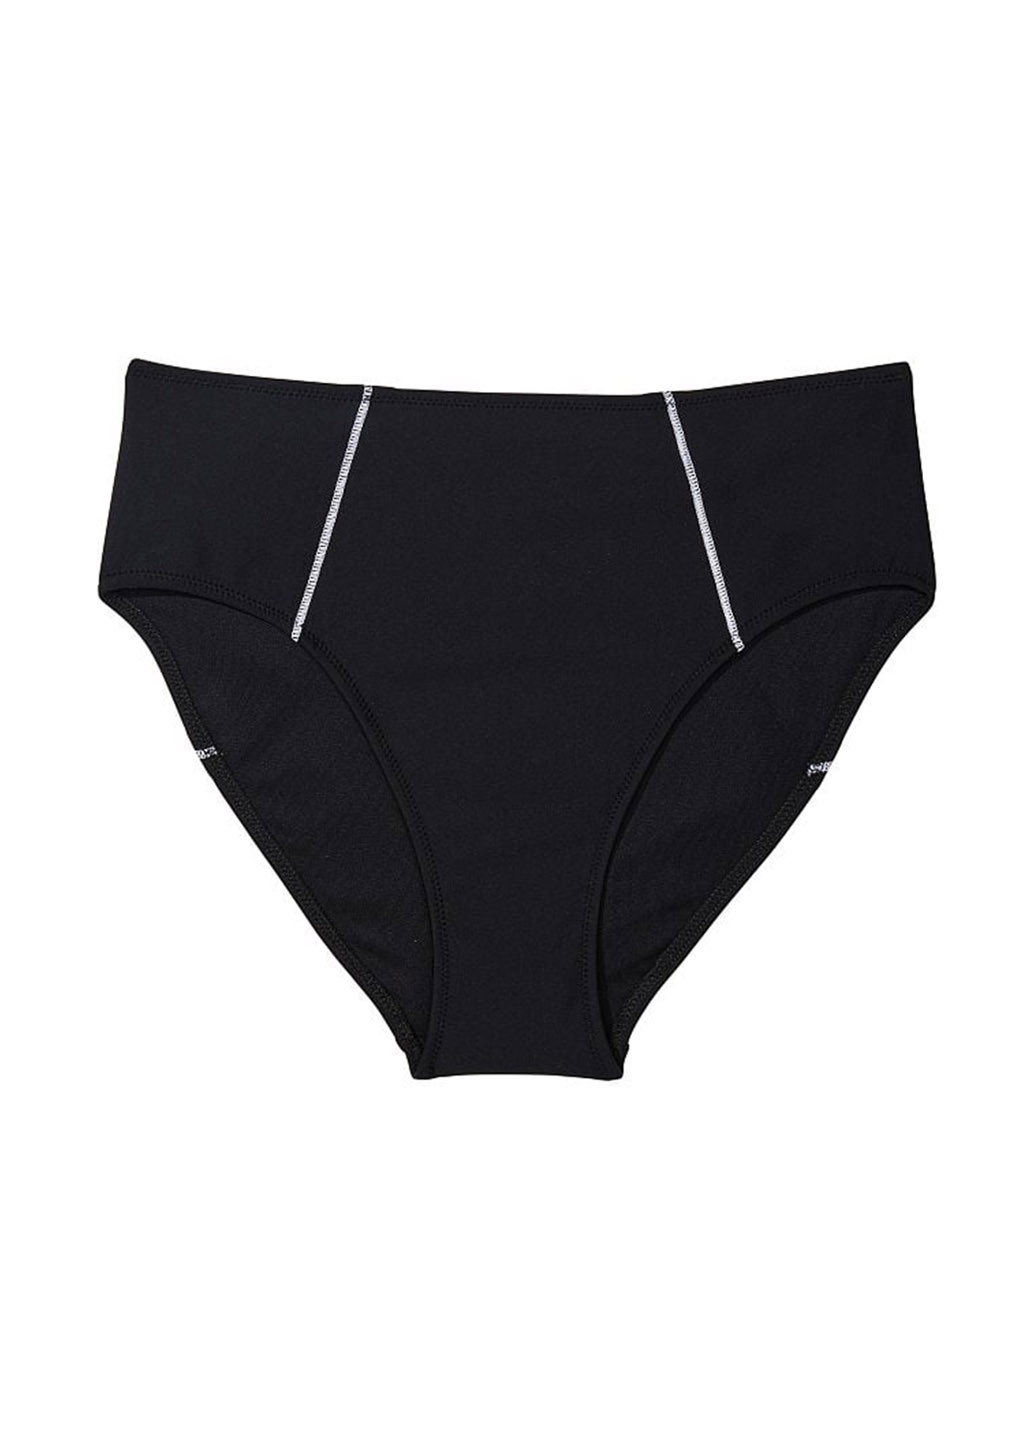 Чорний літній купальник (ліф, труси) роздільний, топ Victoria's Secret